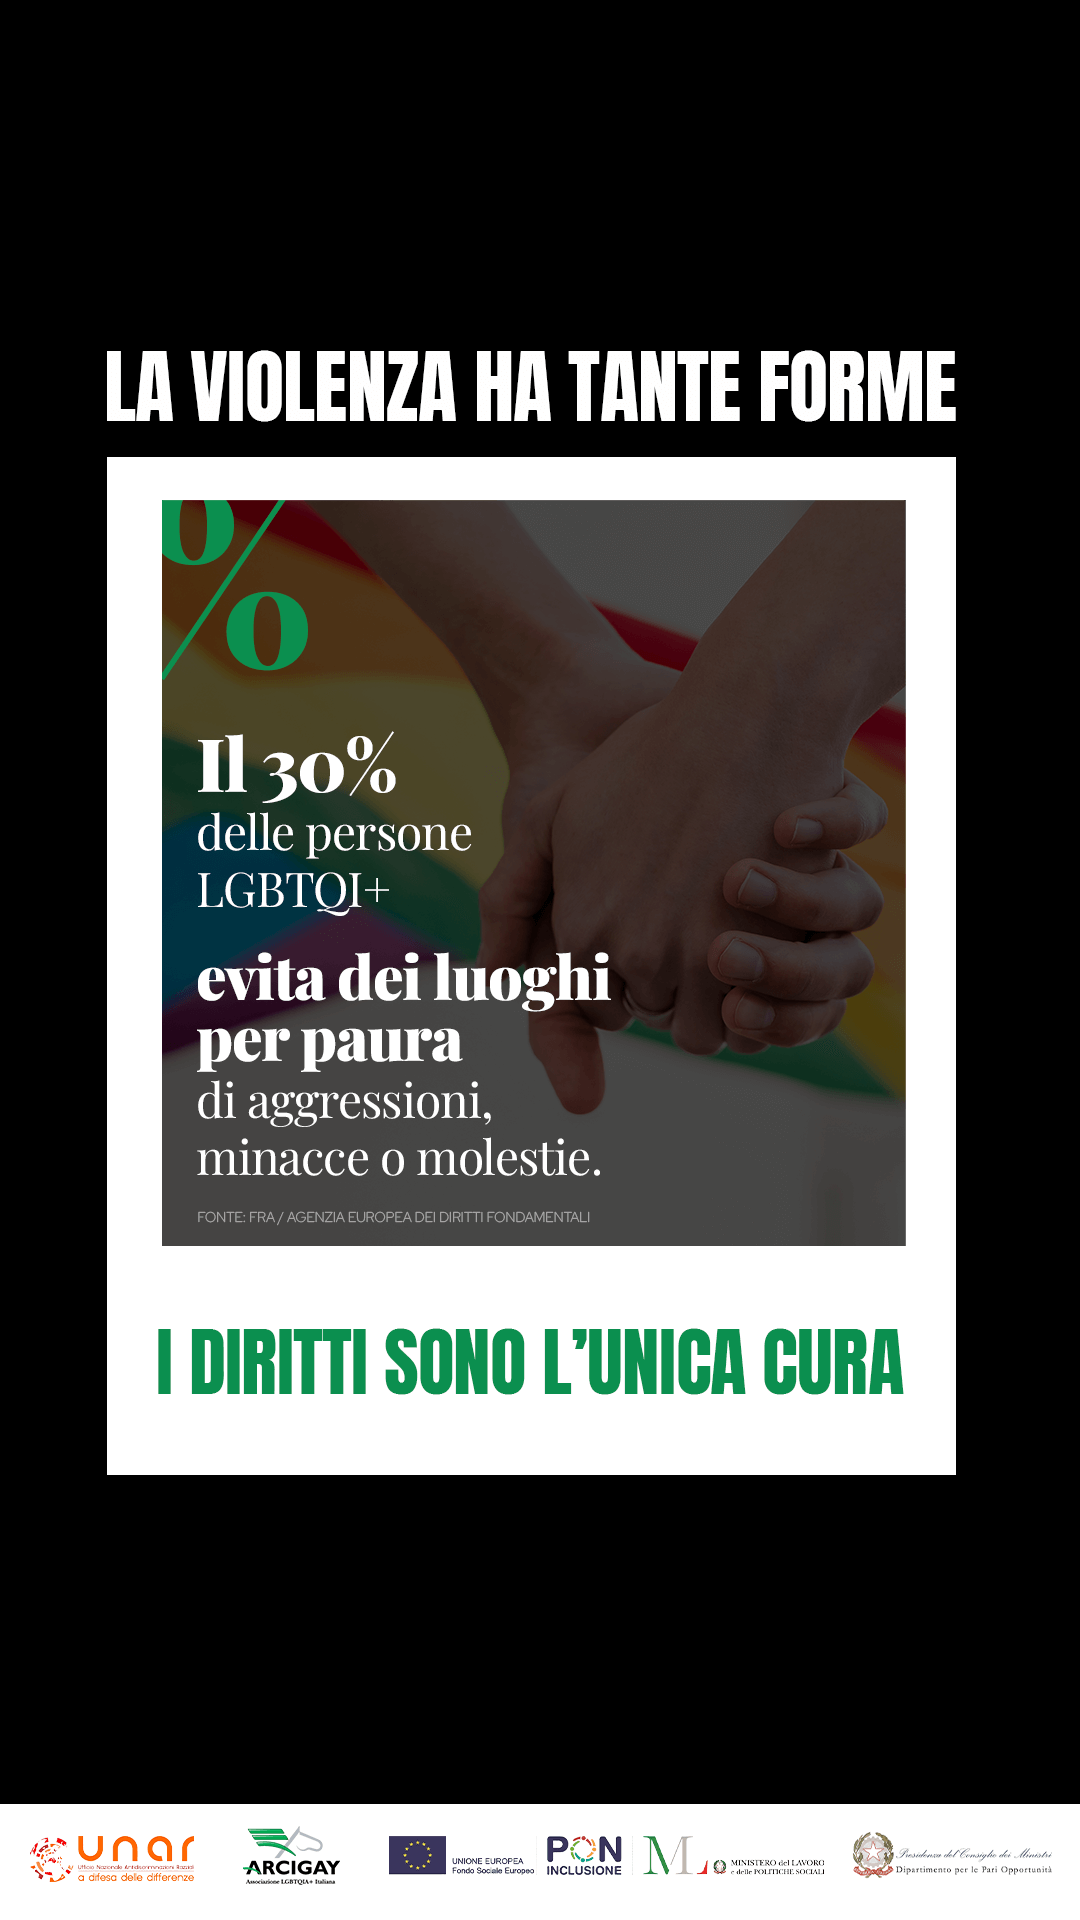 "La violenza ha tante forme i diritti sono l'unica cura", la campagna Arcigay con i 52 Centri Antidiscriminazione d'Italia - Insta dati1 storia - Gay.it